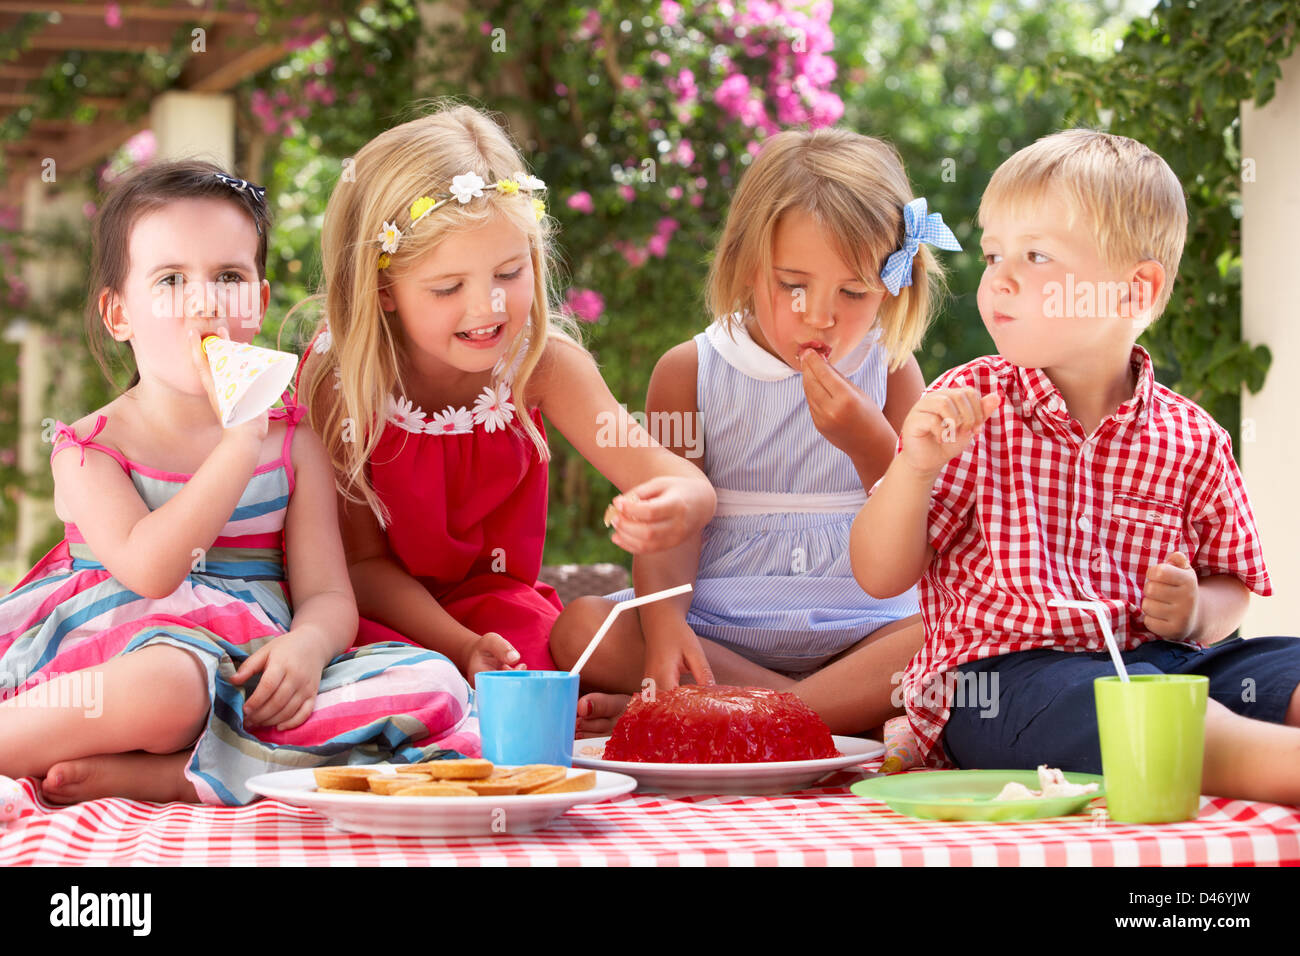 Grupo de niños comiendo jalea en Tea Party al aire libre Foto de stock